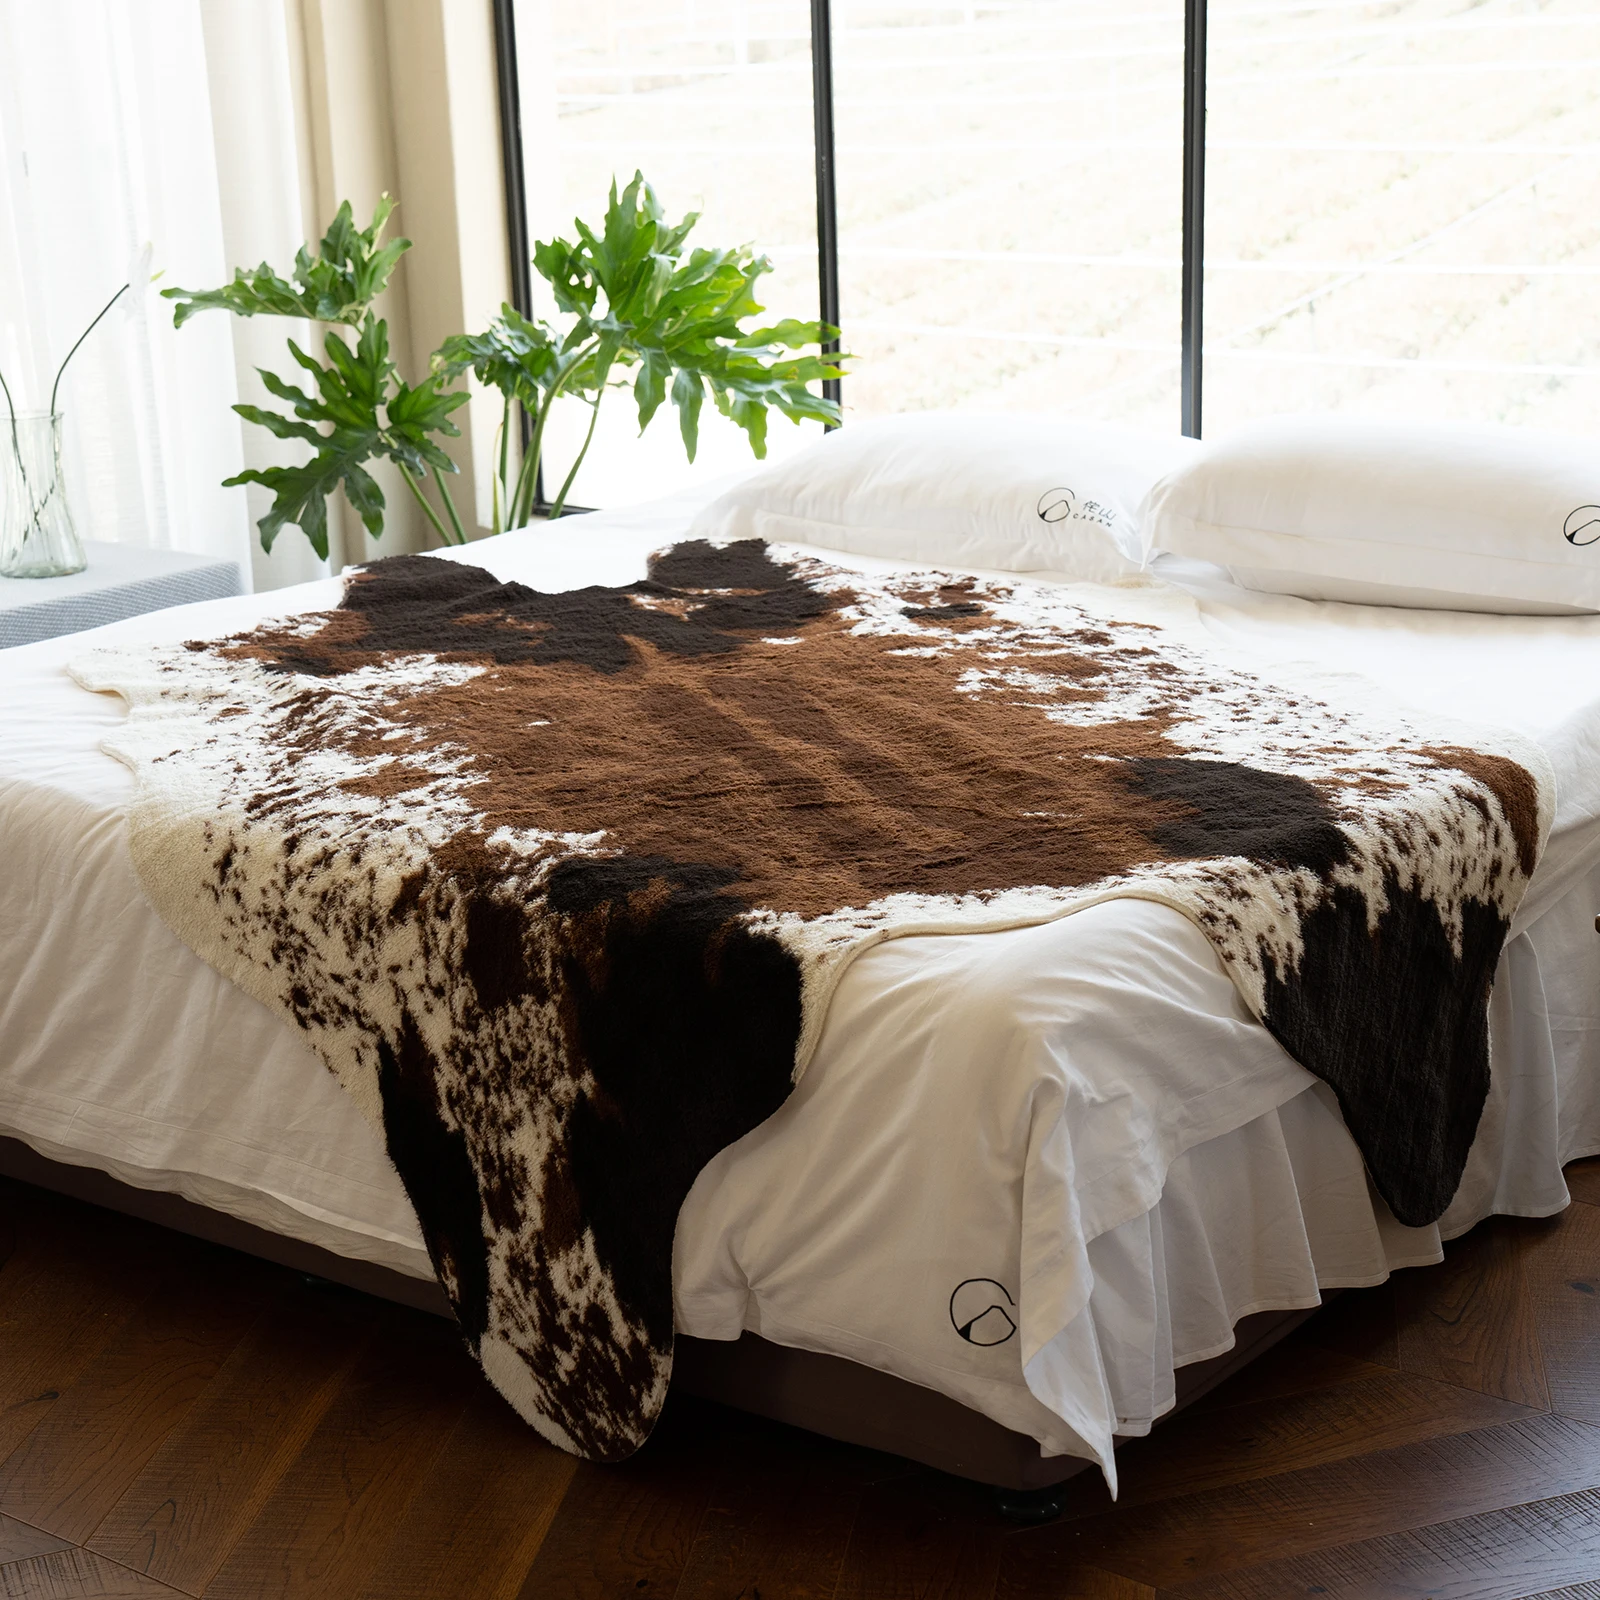 luxo-premium-vaca-impressao-estilo-tapete-sala-de-estar-tapete-do-quarto-home-decor-lavagem-a-mao-modern-cowhide-cushion-bedside-sofa-floor-mat